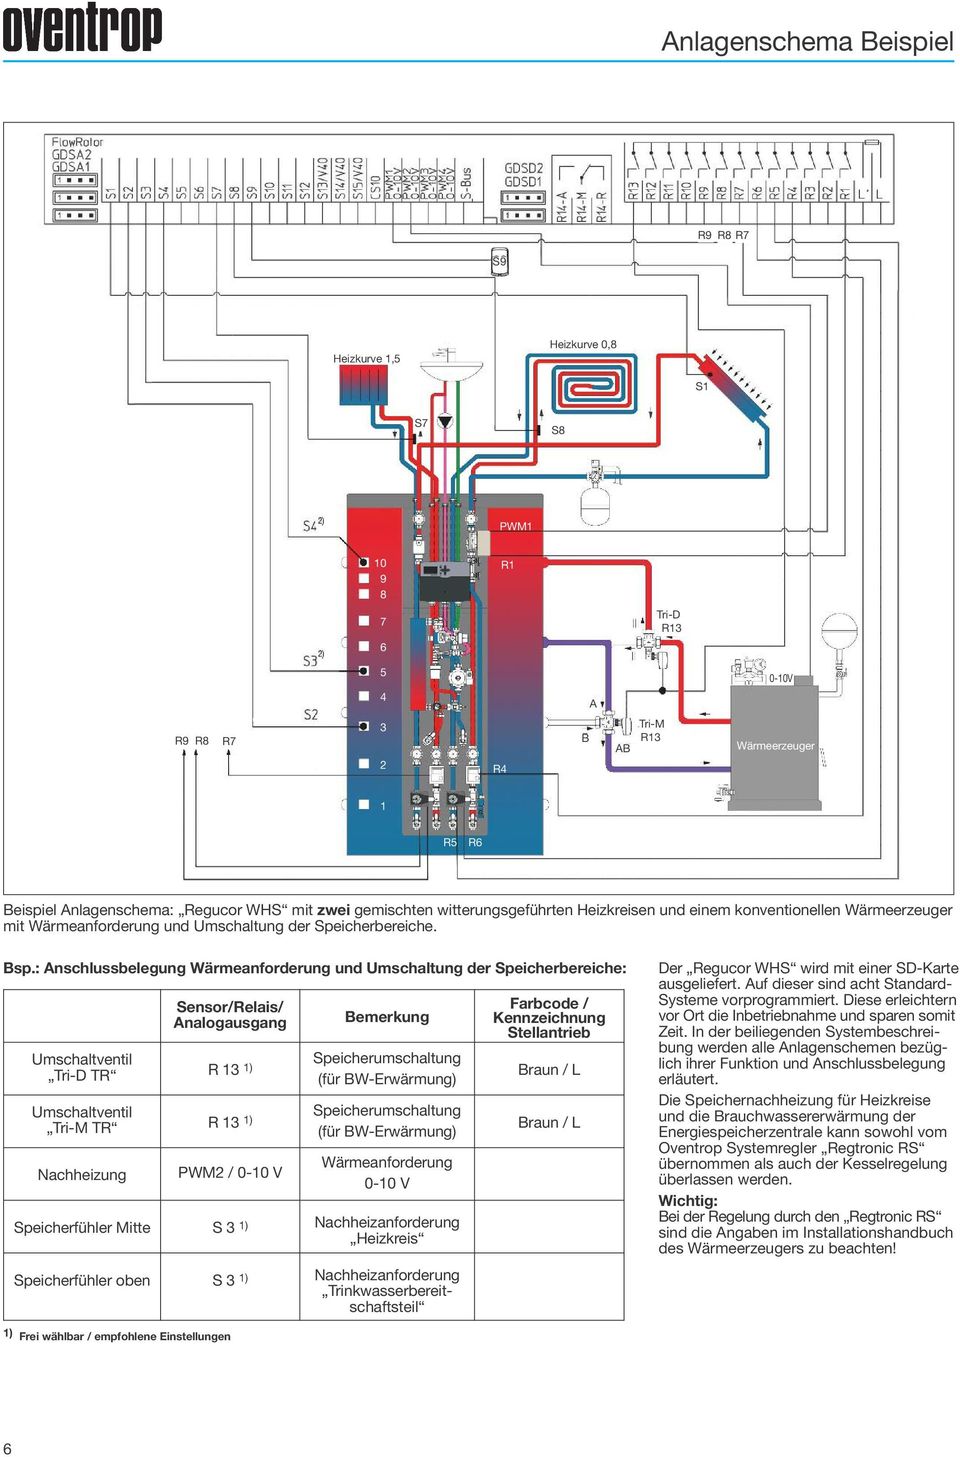 : nschlussbelegung Wärmeanforderung und Umschaltung der Speicherbereiche: Sensor/Relais/ nalogausgang Bemerkung Umschaltventil Speicherumschaltung Tri-D TR R 13 1) (für BW-Erwärmung) Umschaltventil